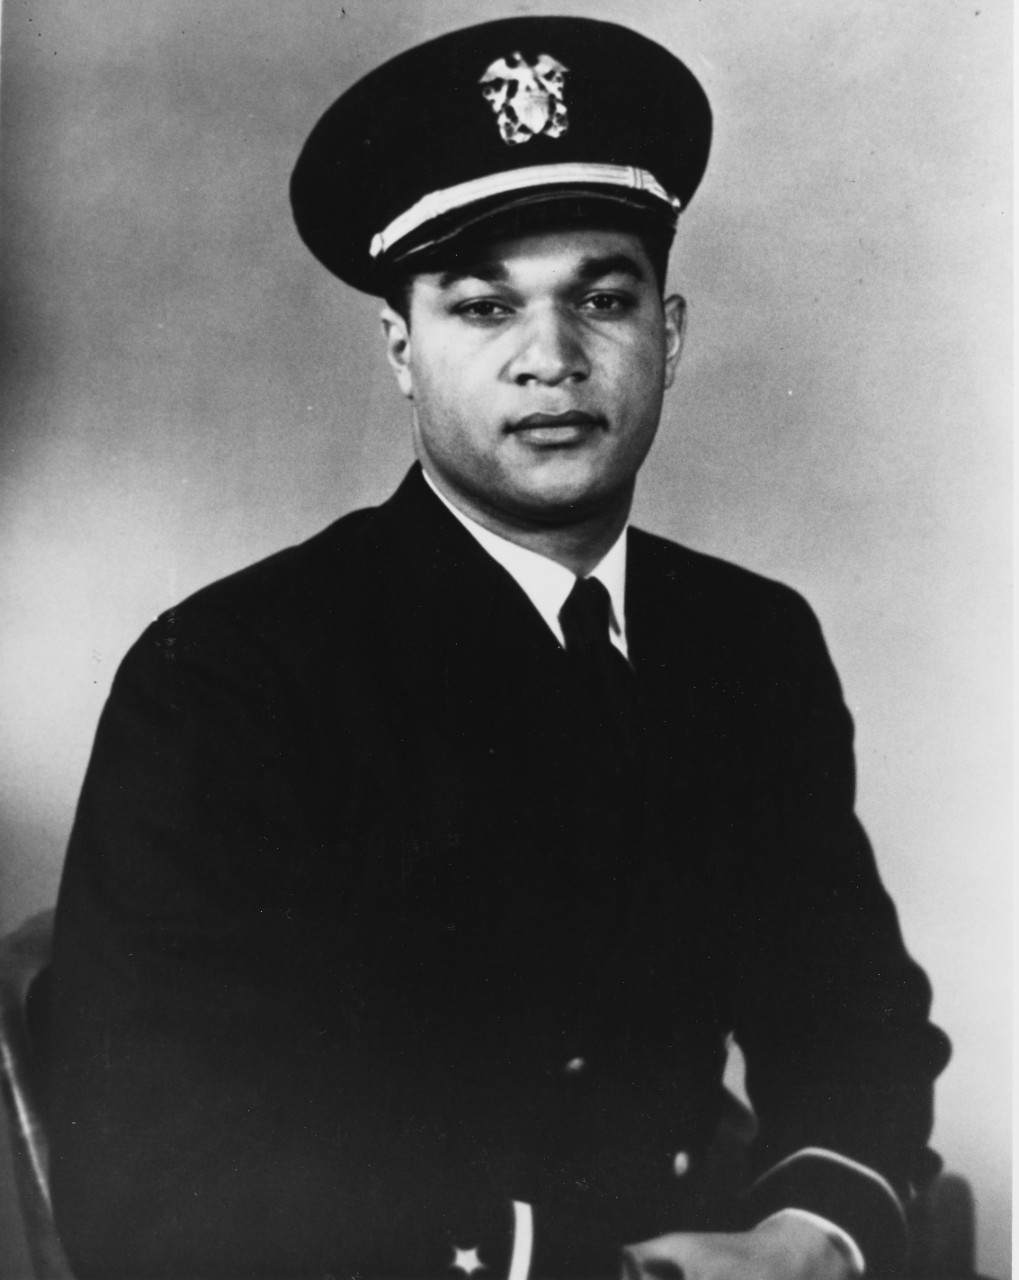 Ensign Frank E. Sublett, USNR